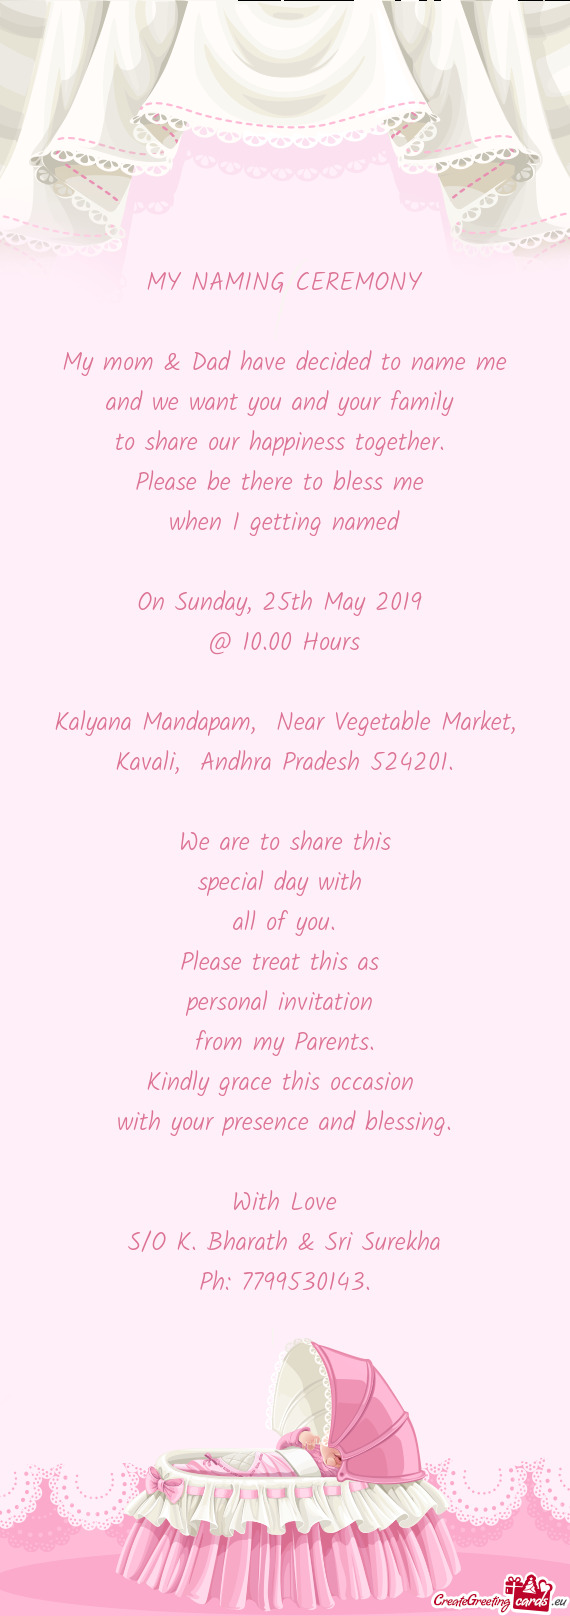 Kalyana Mandapam, Near Vegetable Market, Kavali, Andhra Pradesh 524201